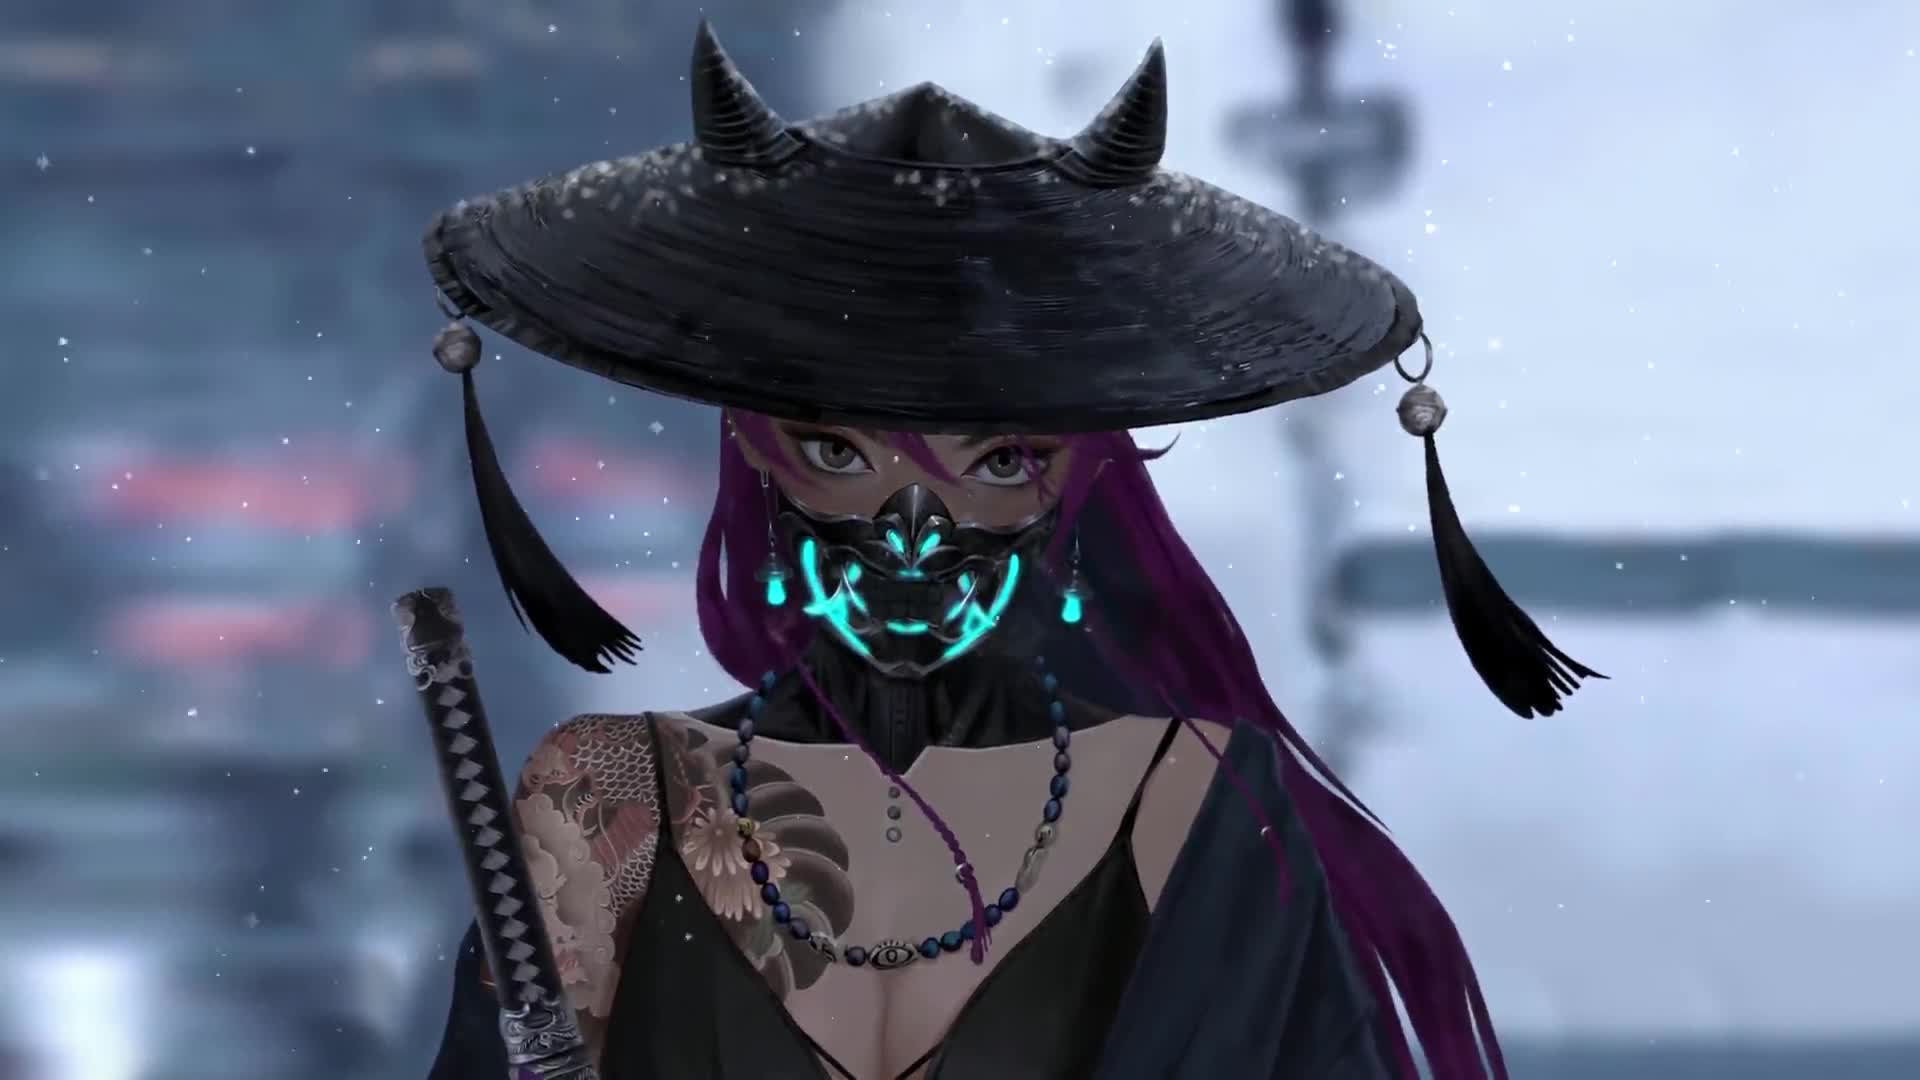 Oni Samurai Girl Mask Horns Snow Fantasy 4K Background Desktop Wallpaper